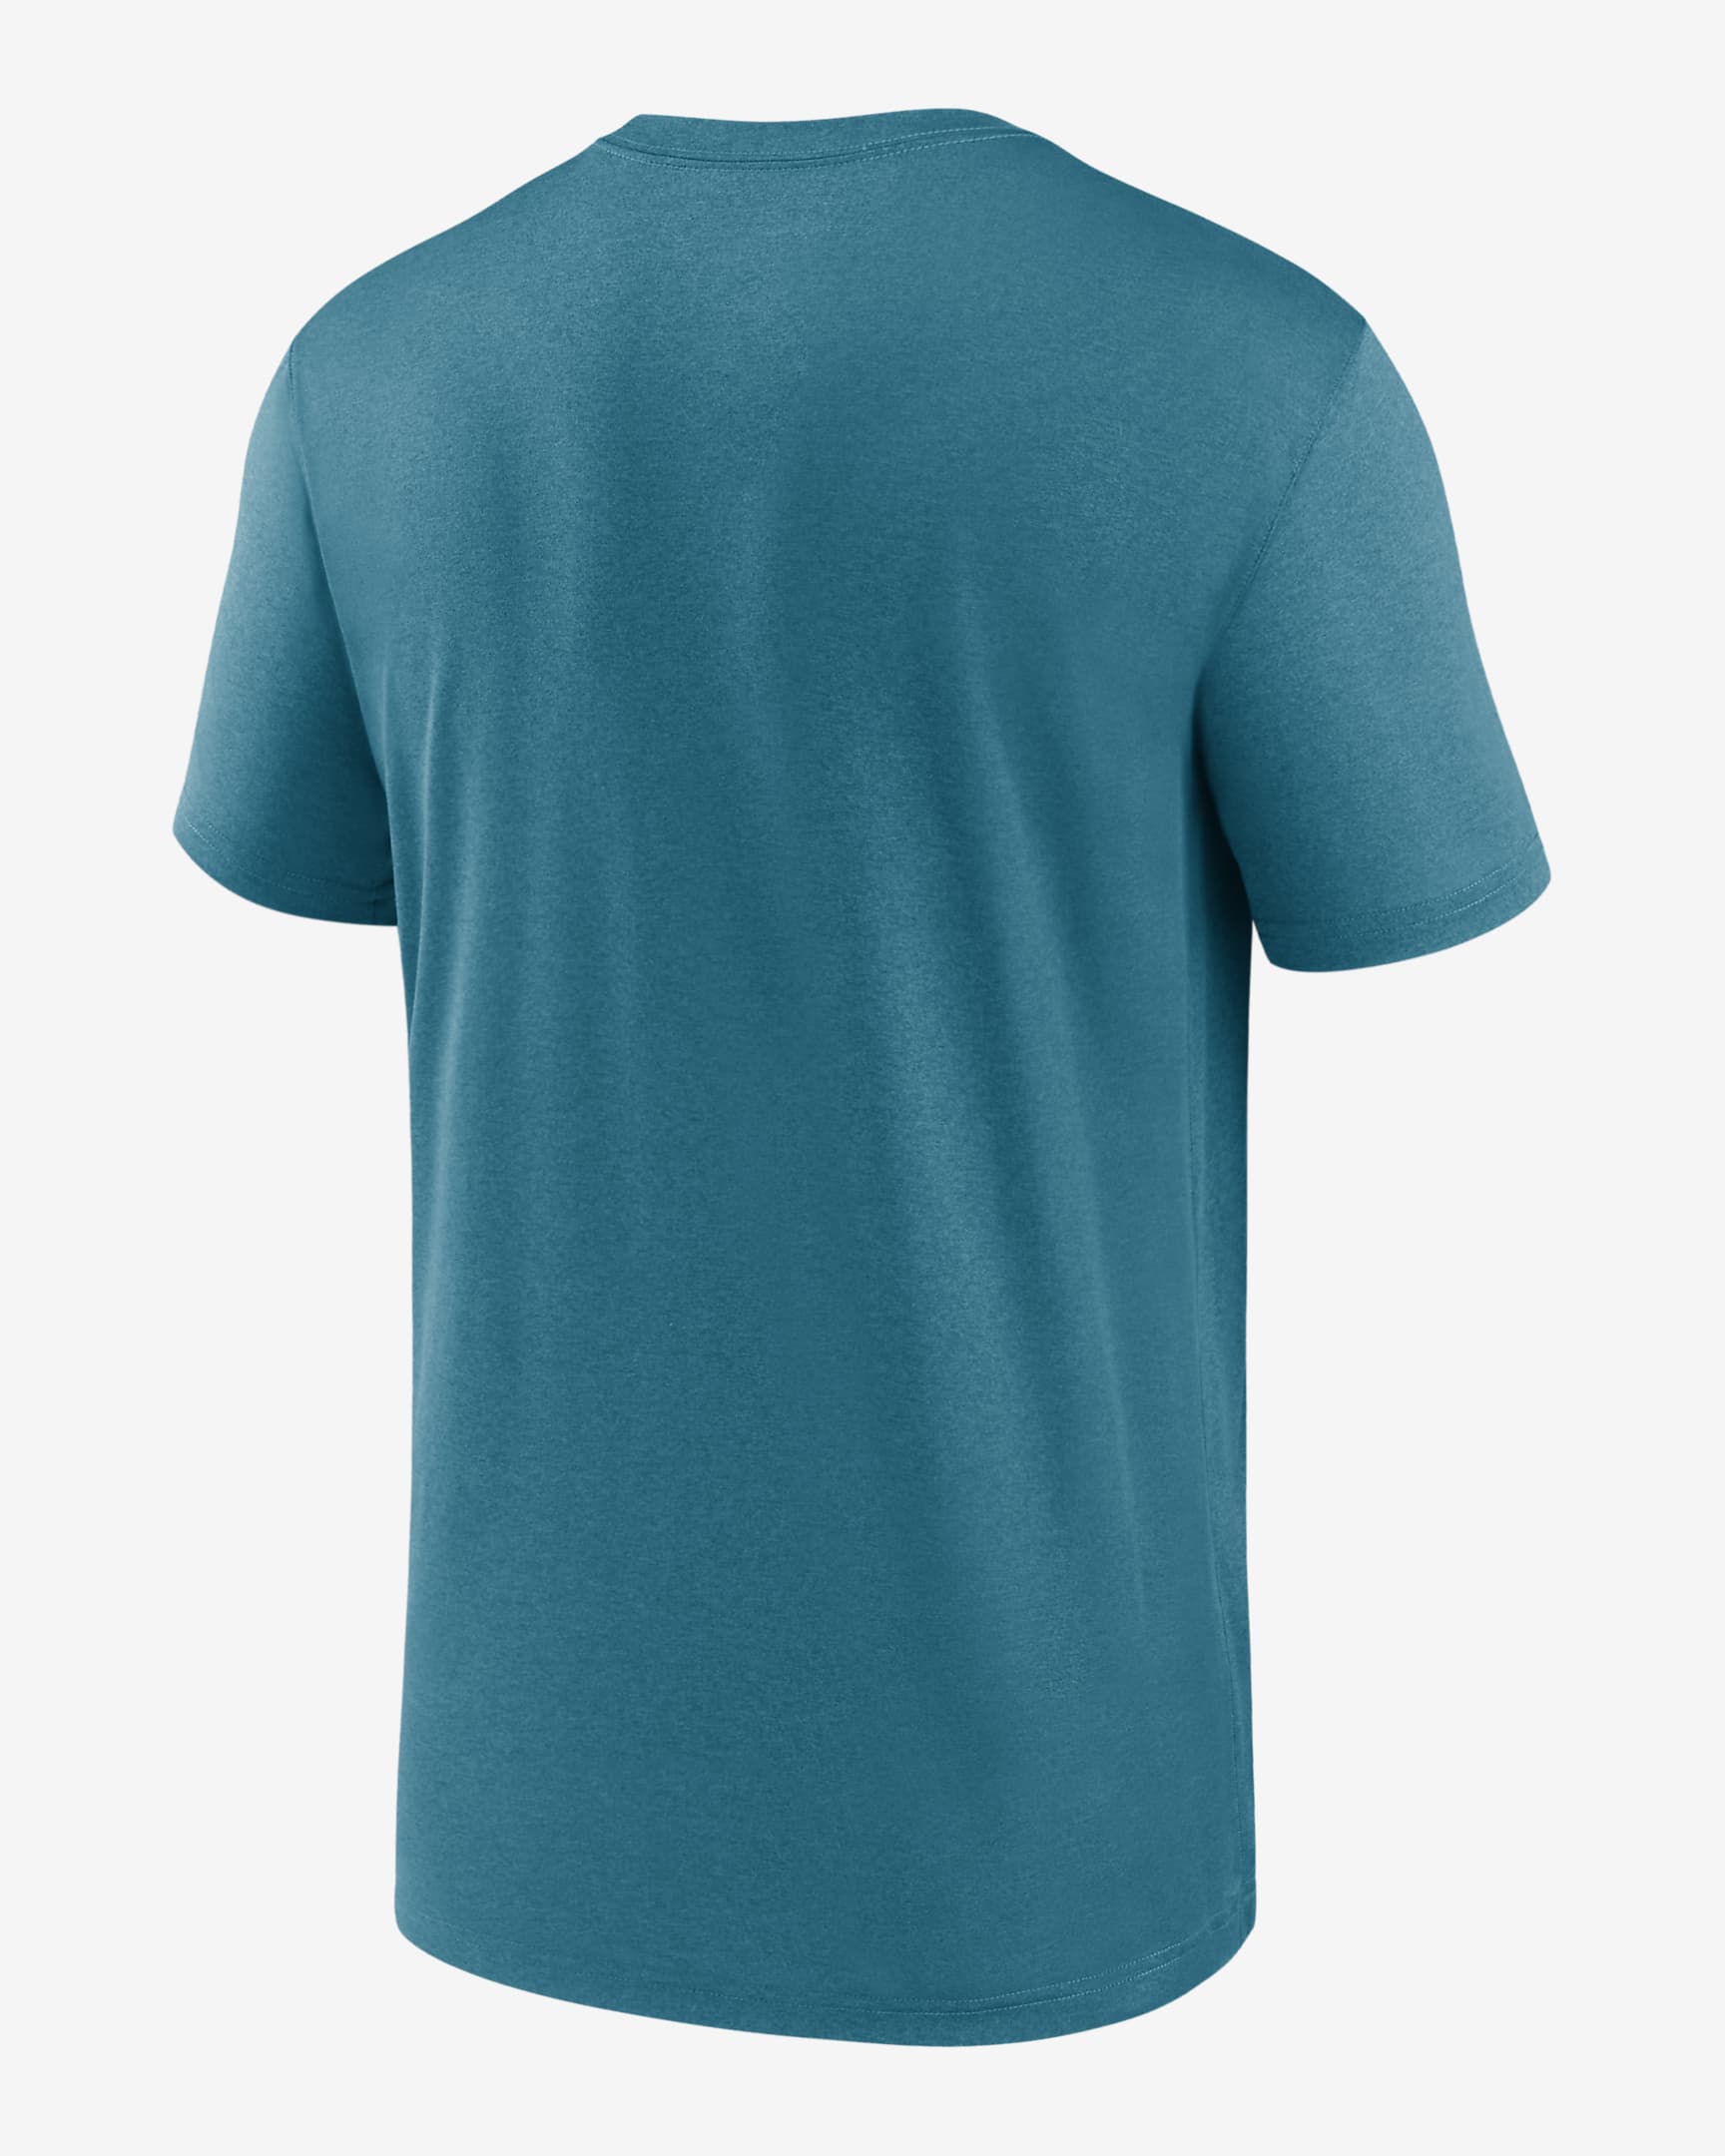 Nike Dri-FIT Logo Legend (NFL Jacksonville Jaguars) Men's T-Shirt. Nike.com